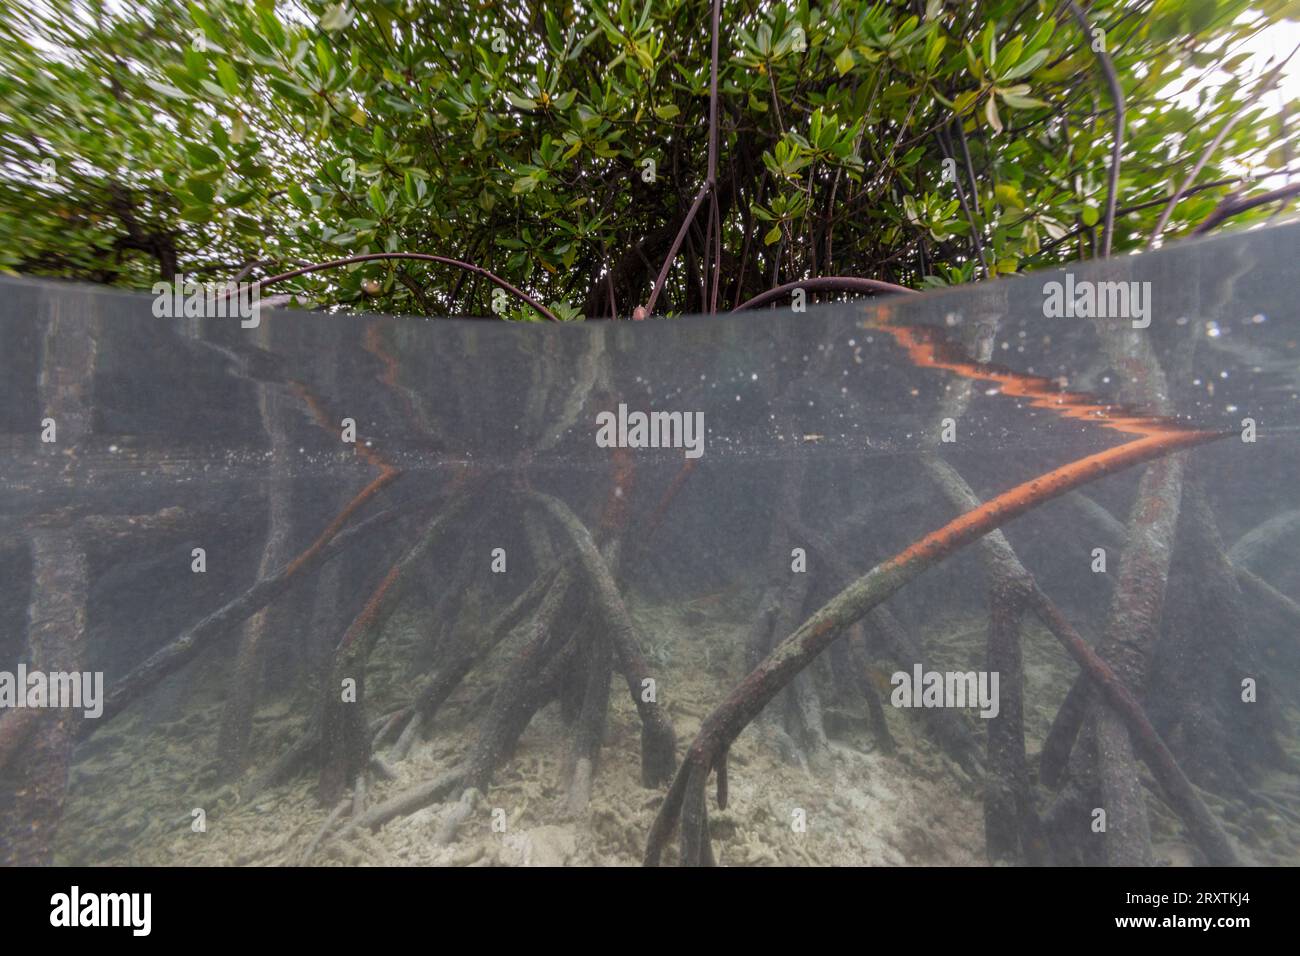 Vue ci-dessus/dessous des mangroves peu profondes au large de l'île Bangka, au large de la pointe nord-est de Sulawesi, Indonésie, Asie du Sud-est, Asie Banque D'Images